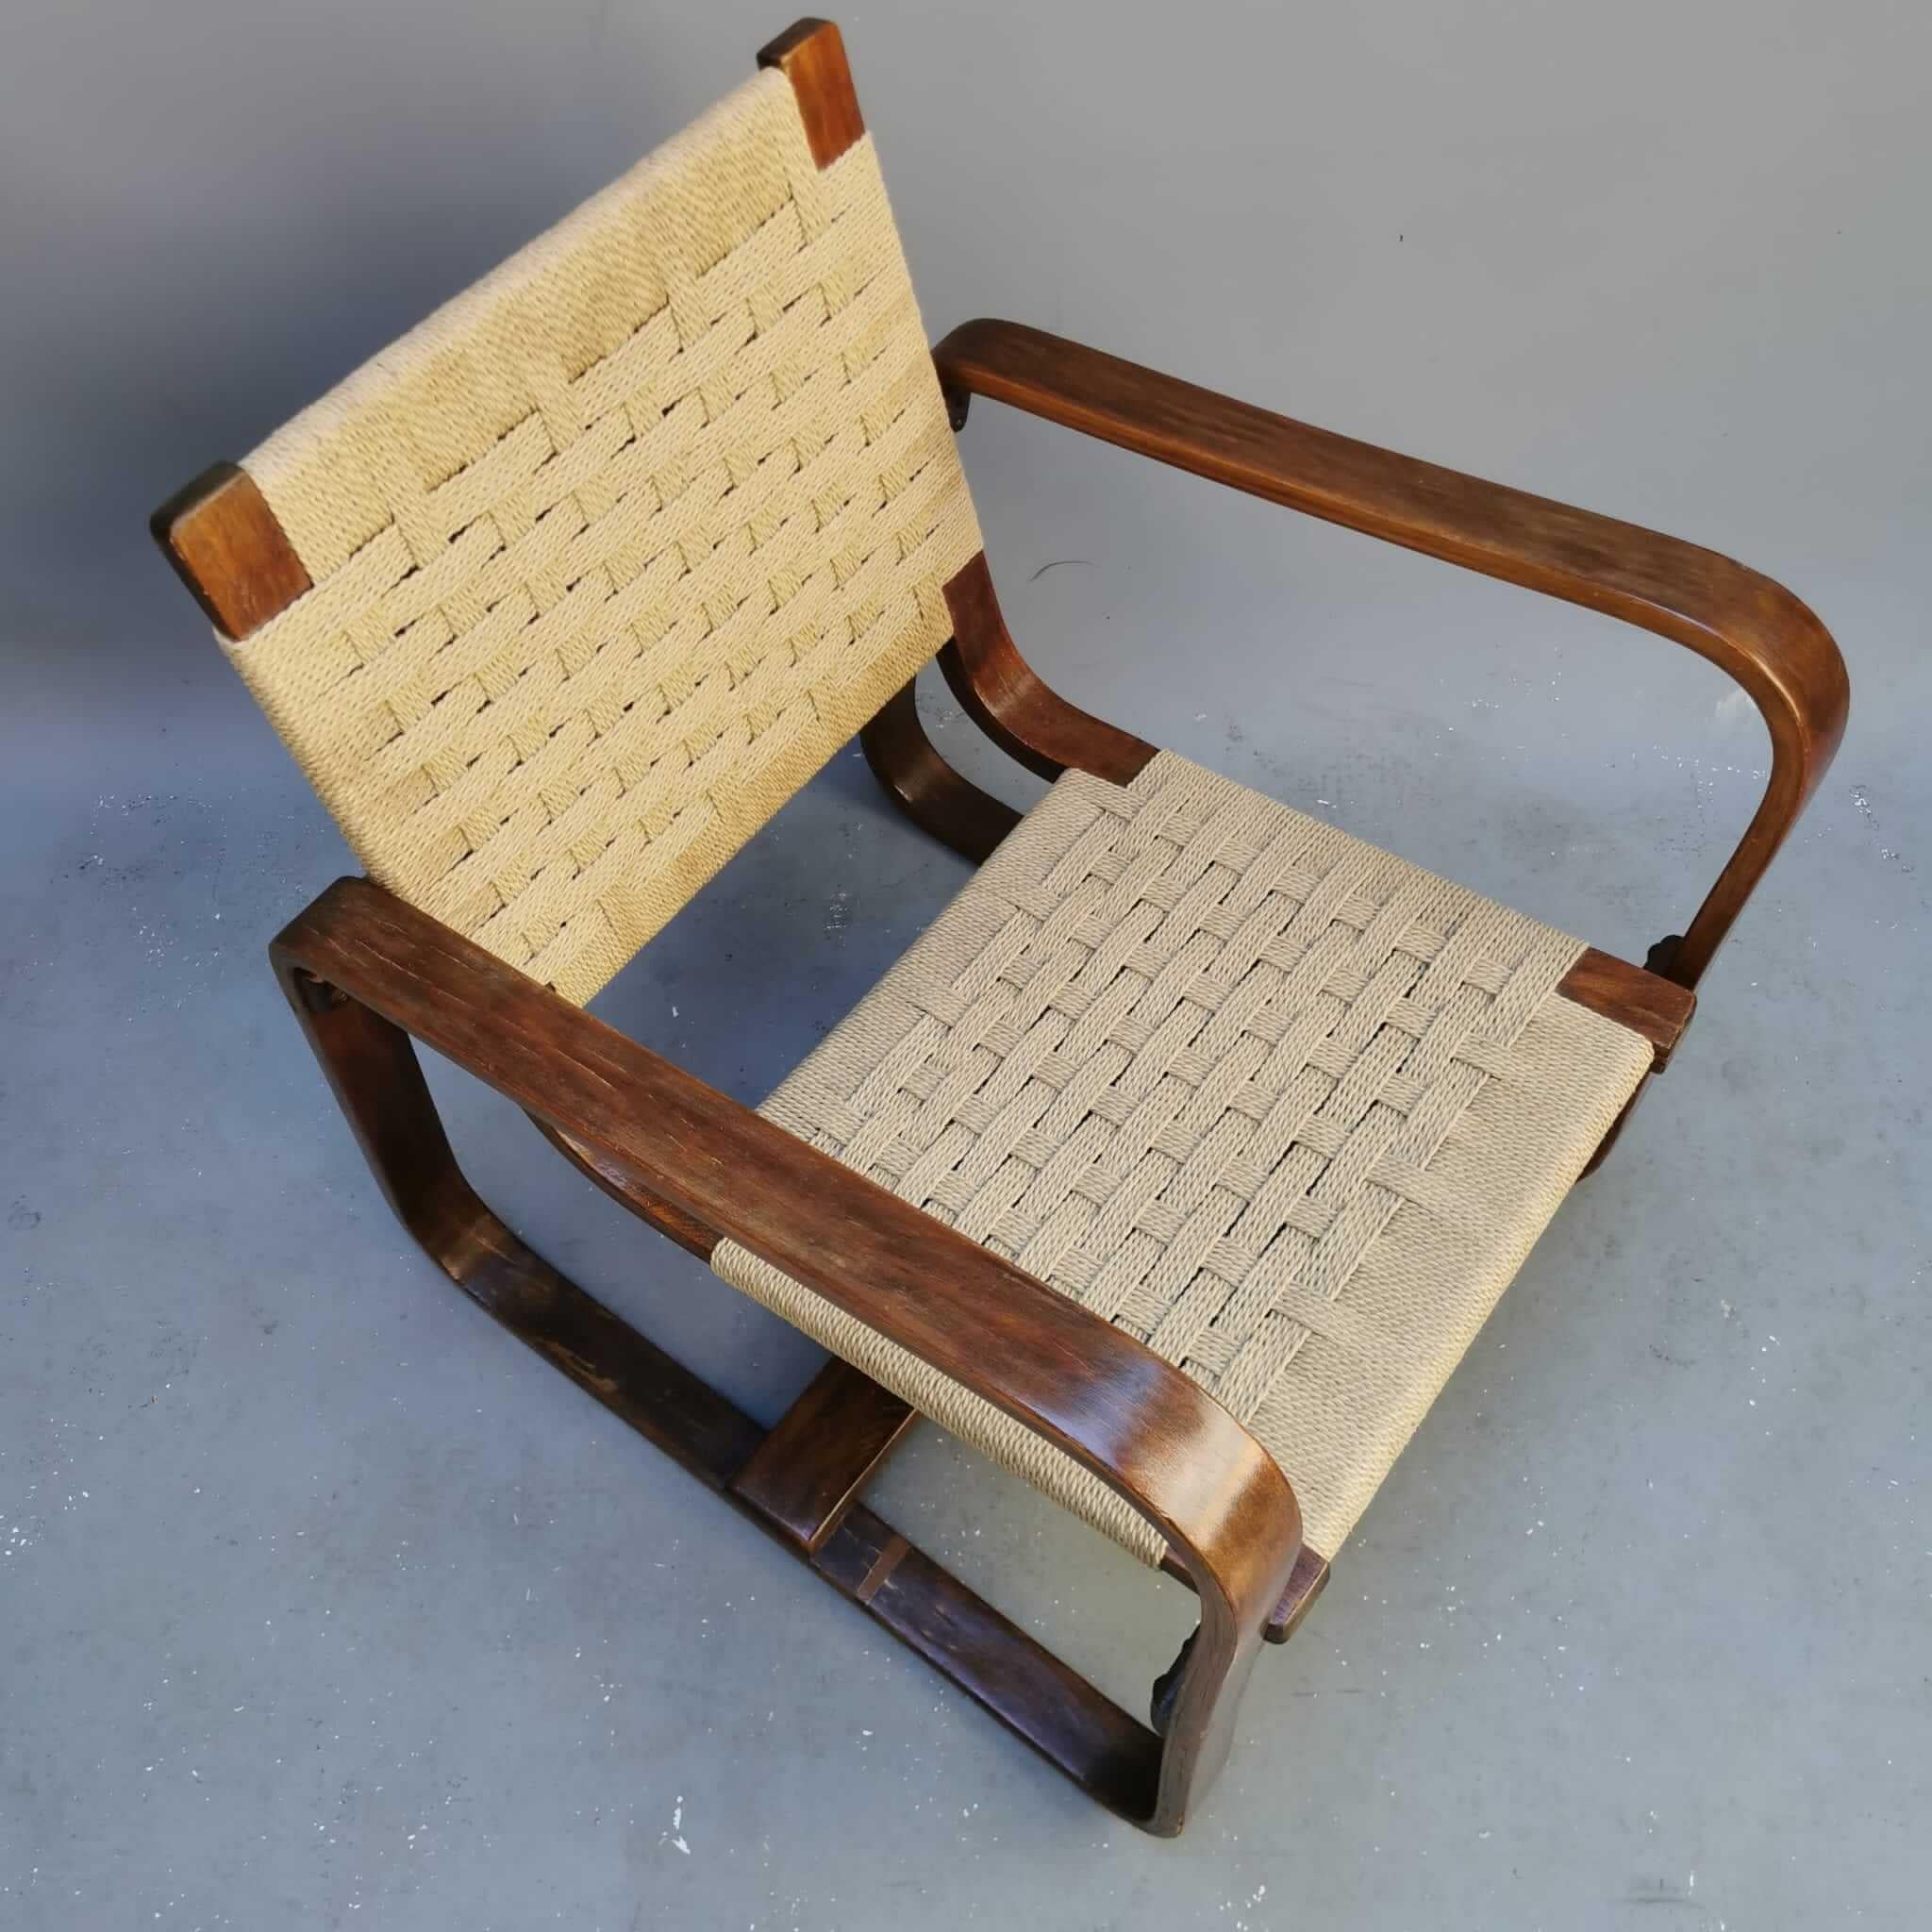 Ce projet de Giuseppe Pagano a été développé pour l'Université Bocconi. Il s'agit d'un fauteuil moderne qui est un symbole du modernisme italien du milieu du siècle, très inspirant. Un objet de grande collection, parfait pour tout intérieur. L'objet